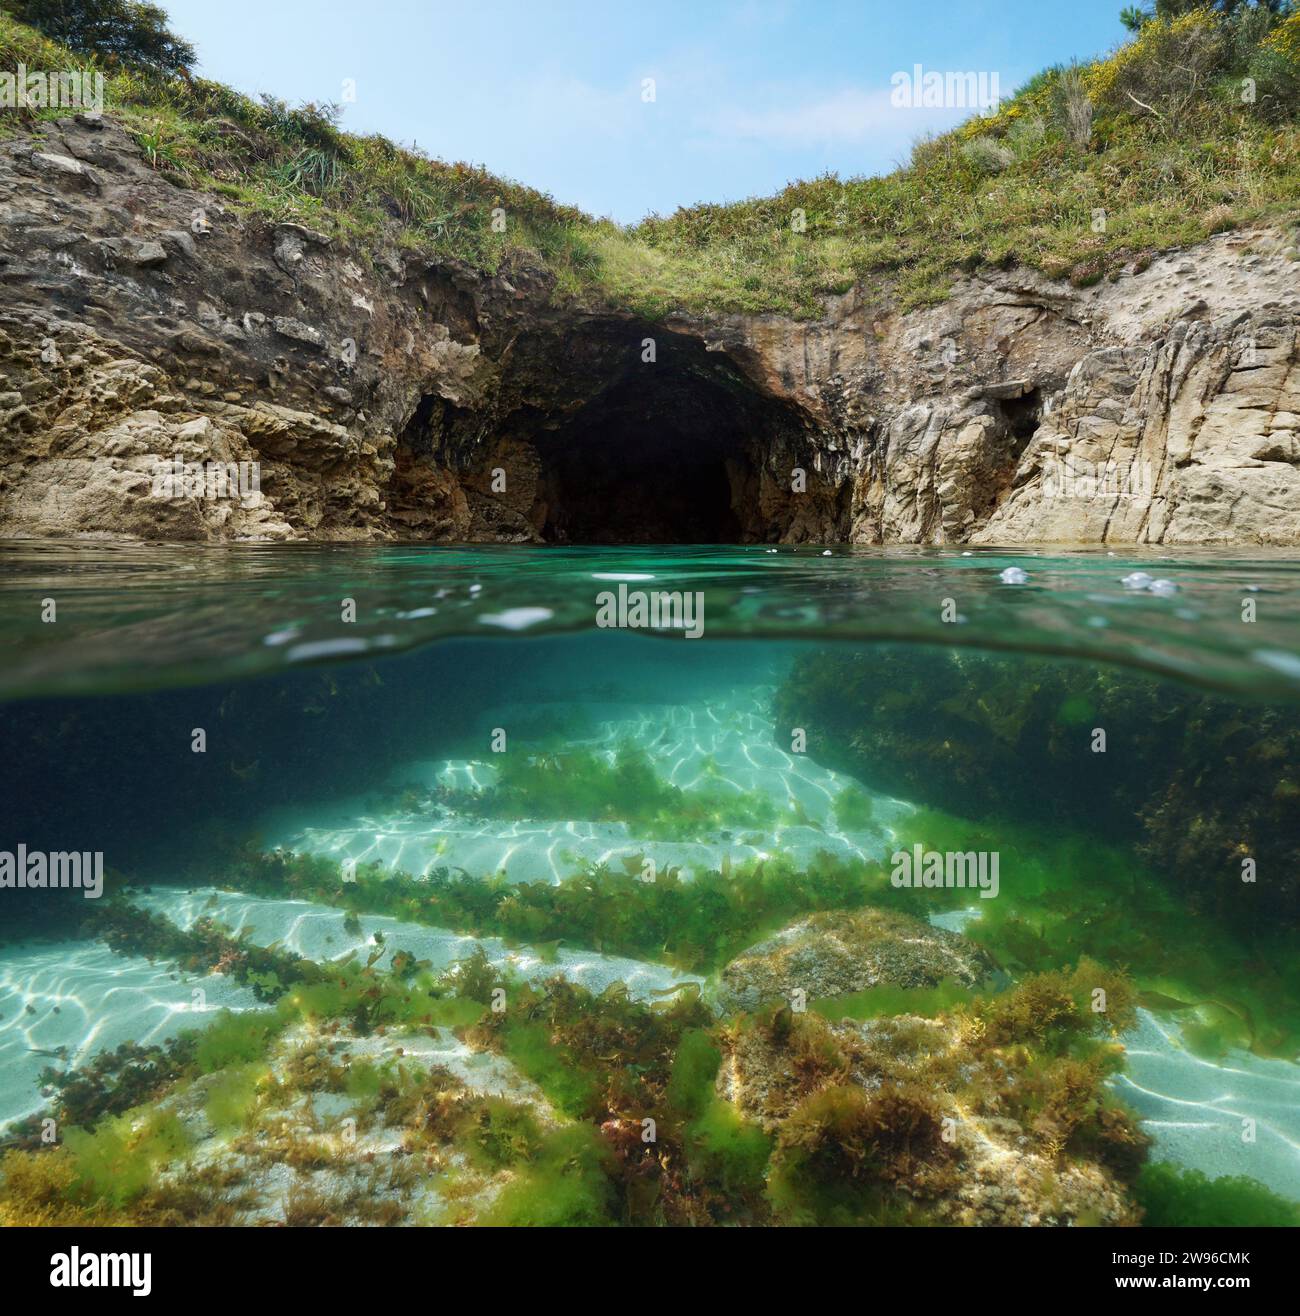 Grotta marina sulla costa atlantica della Spagna, vista a metà sopra e sotto la superficie dell'acqua, scenario naturale, Galizia, Rias Baixas, Cangas Foto Stock